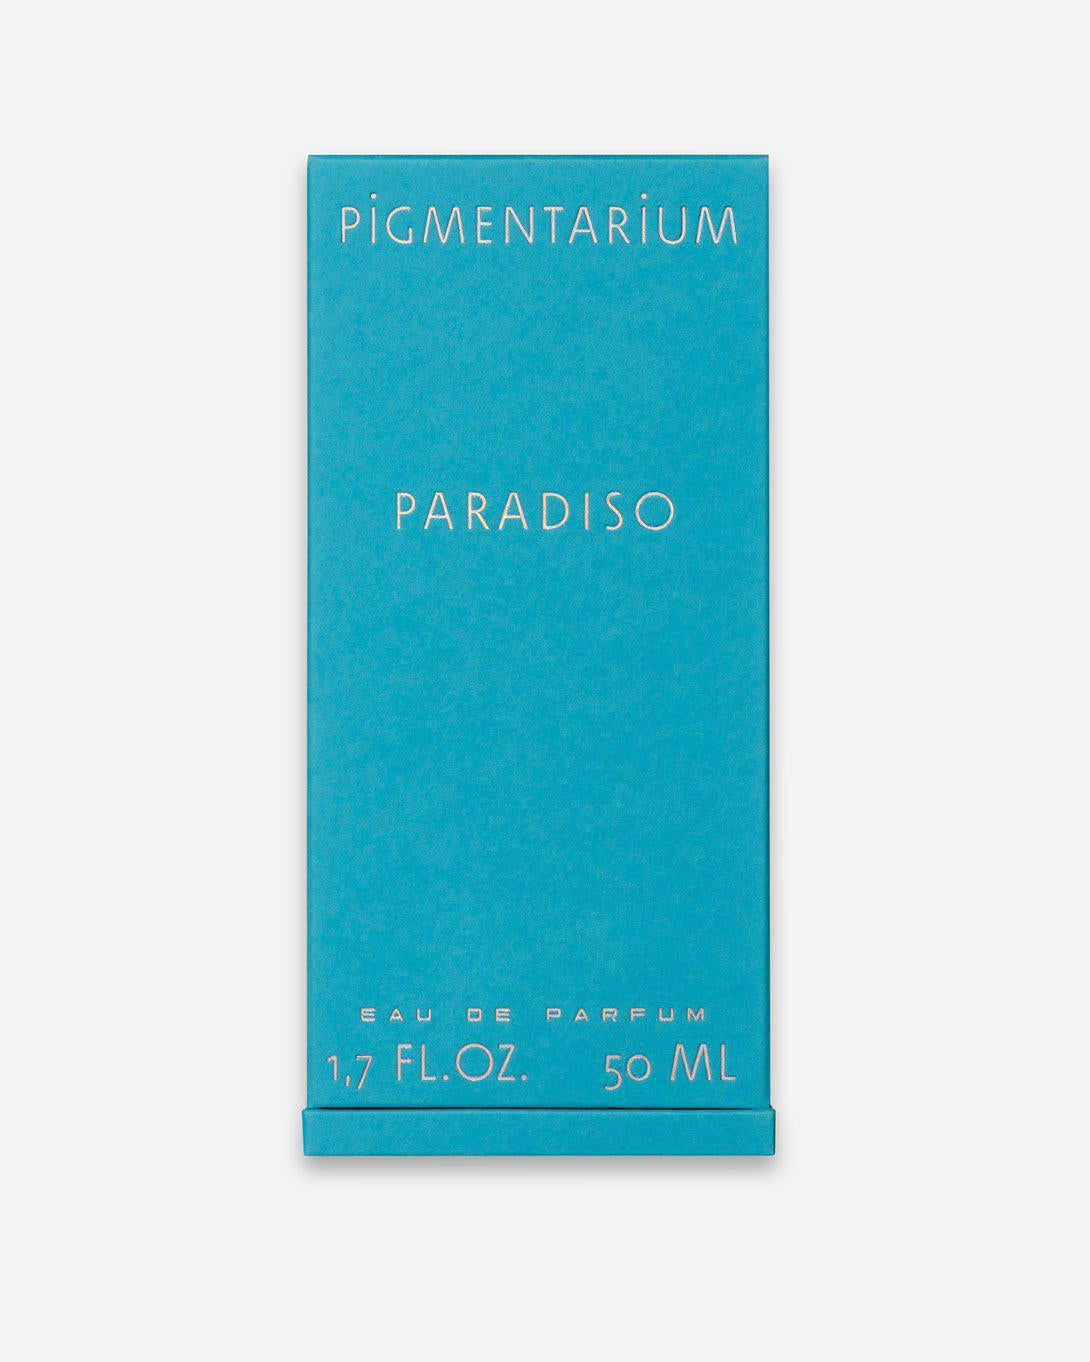 Paradiso Perfume - Fragrance - Pigmentarium - Elevastor